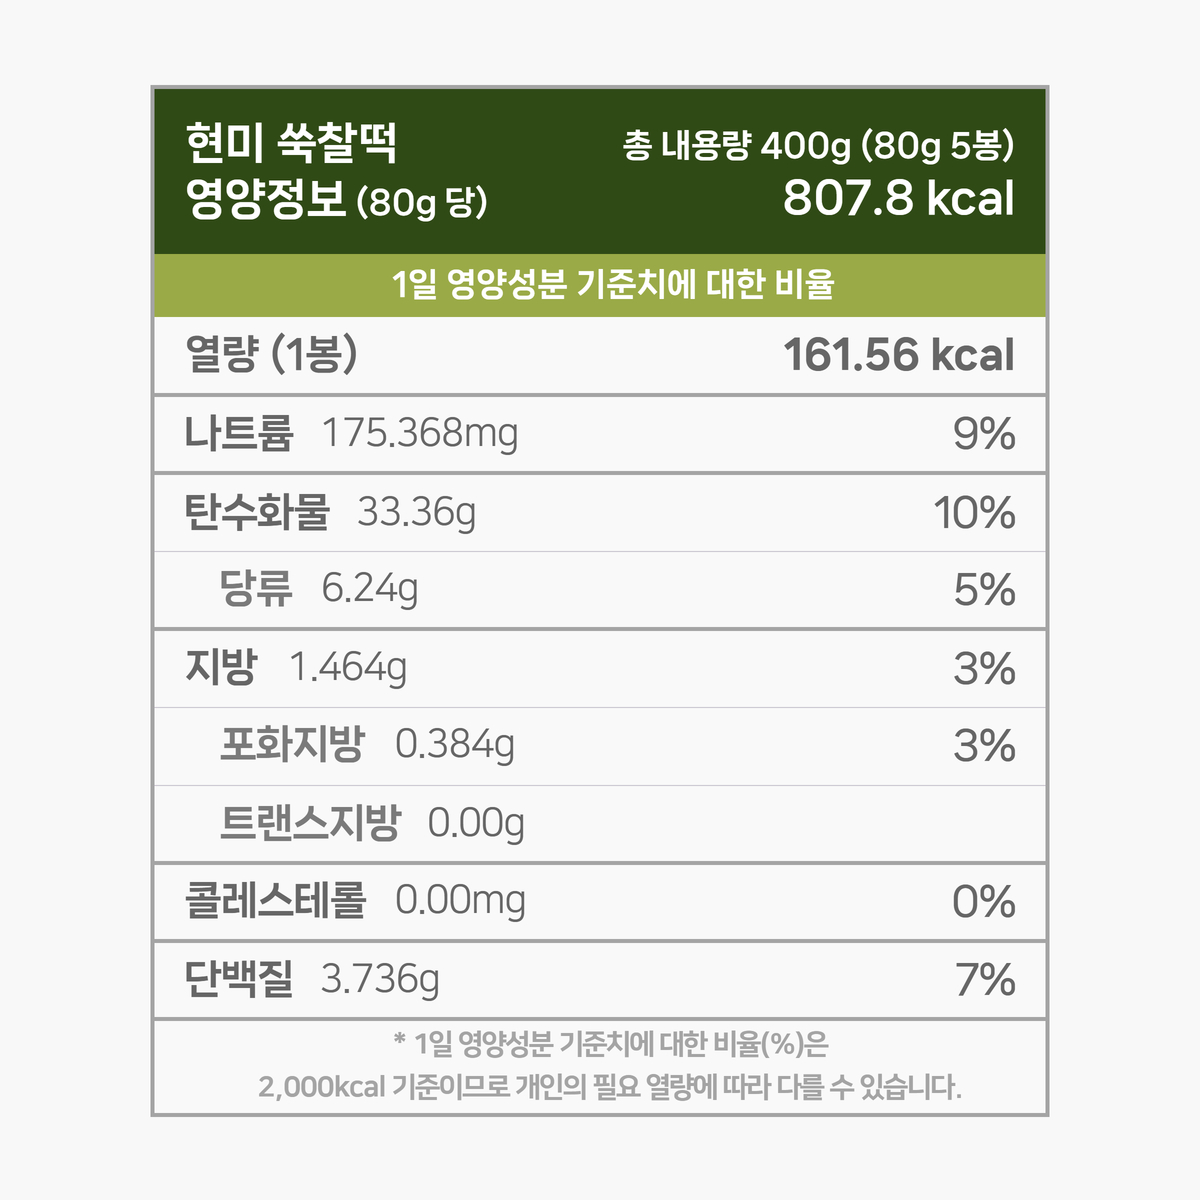 영양성분 표입니다. 한 봉 80g 기준 161.56 칼로리. 다음은 칼로리를 제외한 다른 영양성분 입니다. 칼로리 외 영양성분은 1일 영양성분 기준치에 대한 비율도 퍼센트로 표기되어 있습니다. 그 목록입니다. 나트륨 175.37mg 9%, 탄수화물 33.36g 13%, 당류 6.24g 6%, 지방 1.46g 3%, 트랜스지방 0.00g 0%, 포화지방 0.38g 3%, 콜레스테롤 0.00mg 0%, 단백질 3.74g 7%. 1일 영양성분 기준치에 대한 비율(퍼센트)는 2000칼로리 기준이므로 개인의 필요한 열량에 따라 다를 수 있습니다.